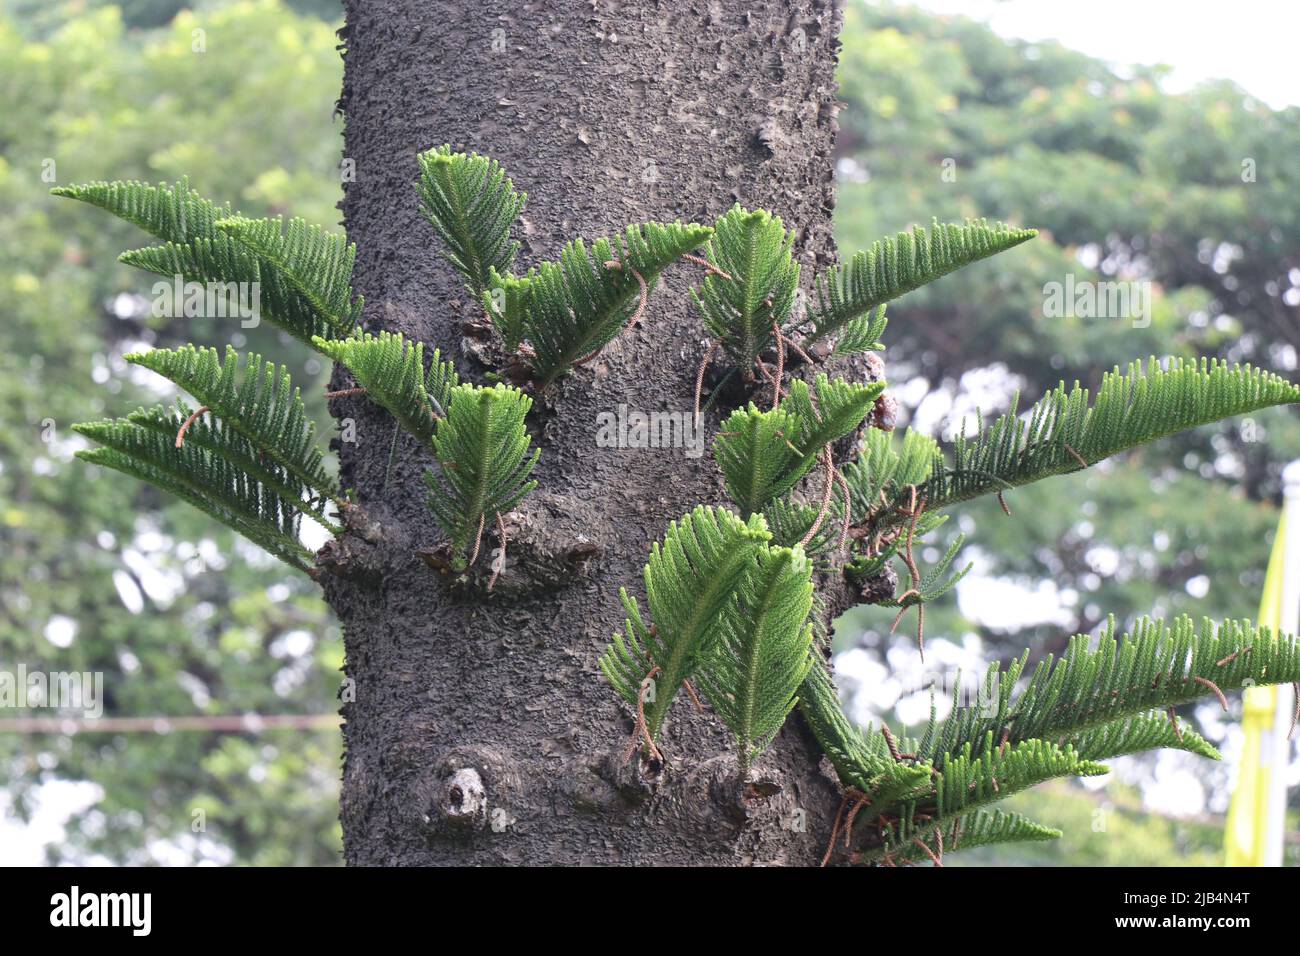 De petites branches sont cultivées sur des troncs de sapin populairement connu sous le nom d'arbre de Noël Banque D'Images